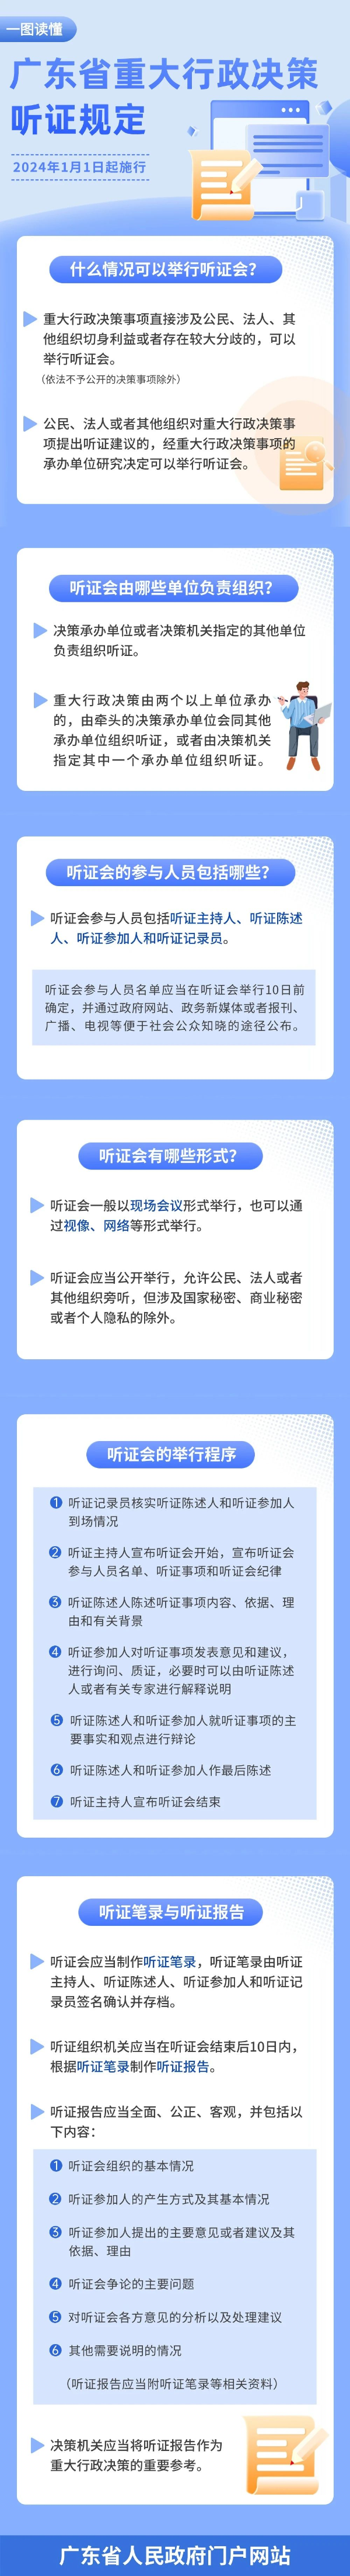 p1-一图读懂广东省重大行政决策听证规定 .jpg